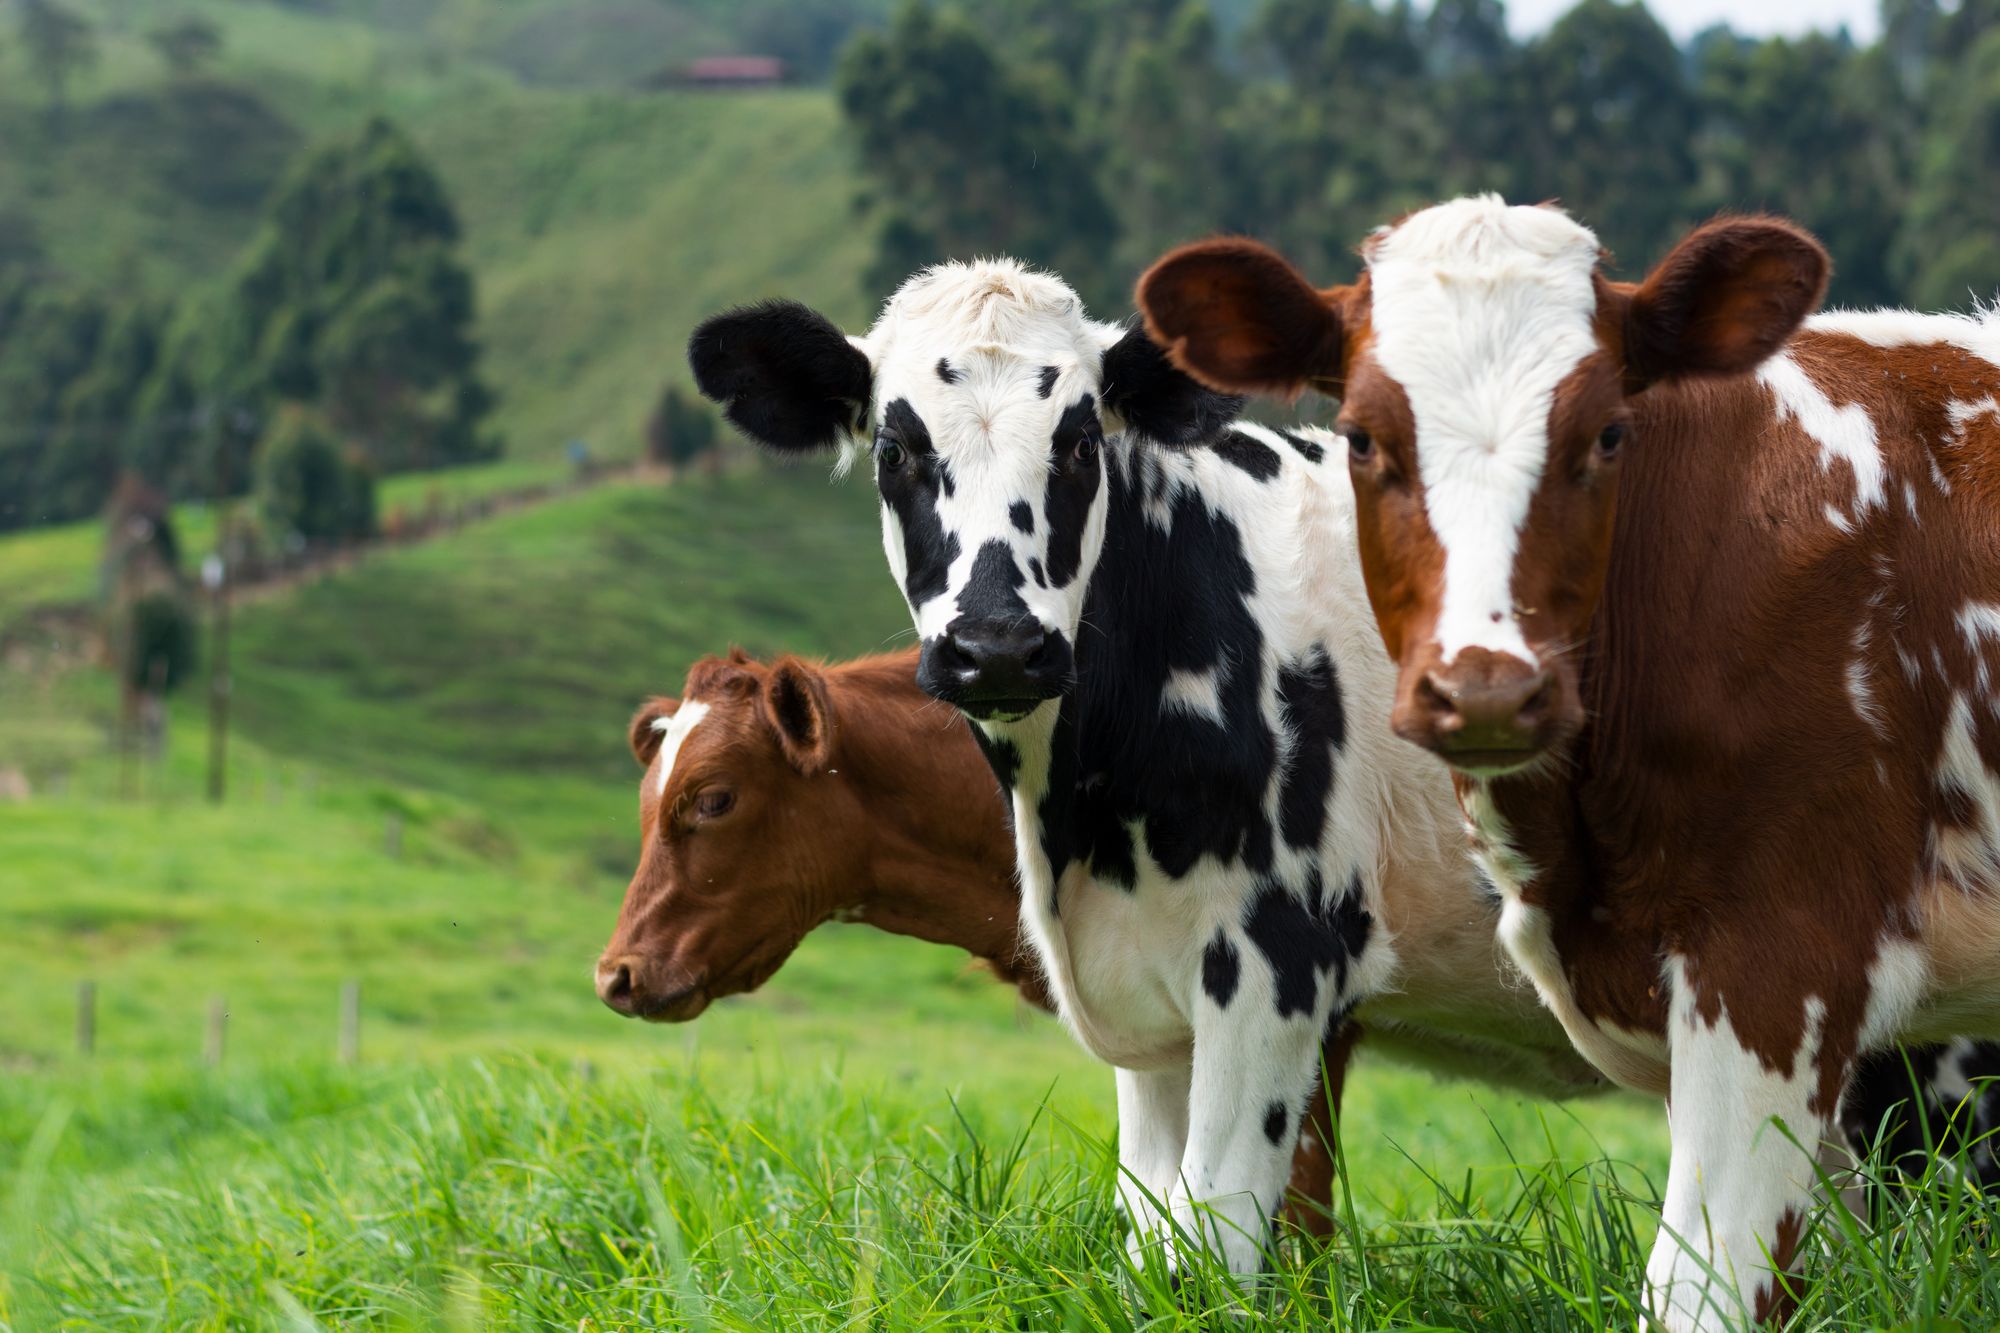 Mikrobi v kravských žaludcích dovedou rozložit plast